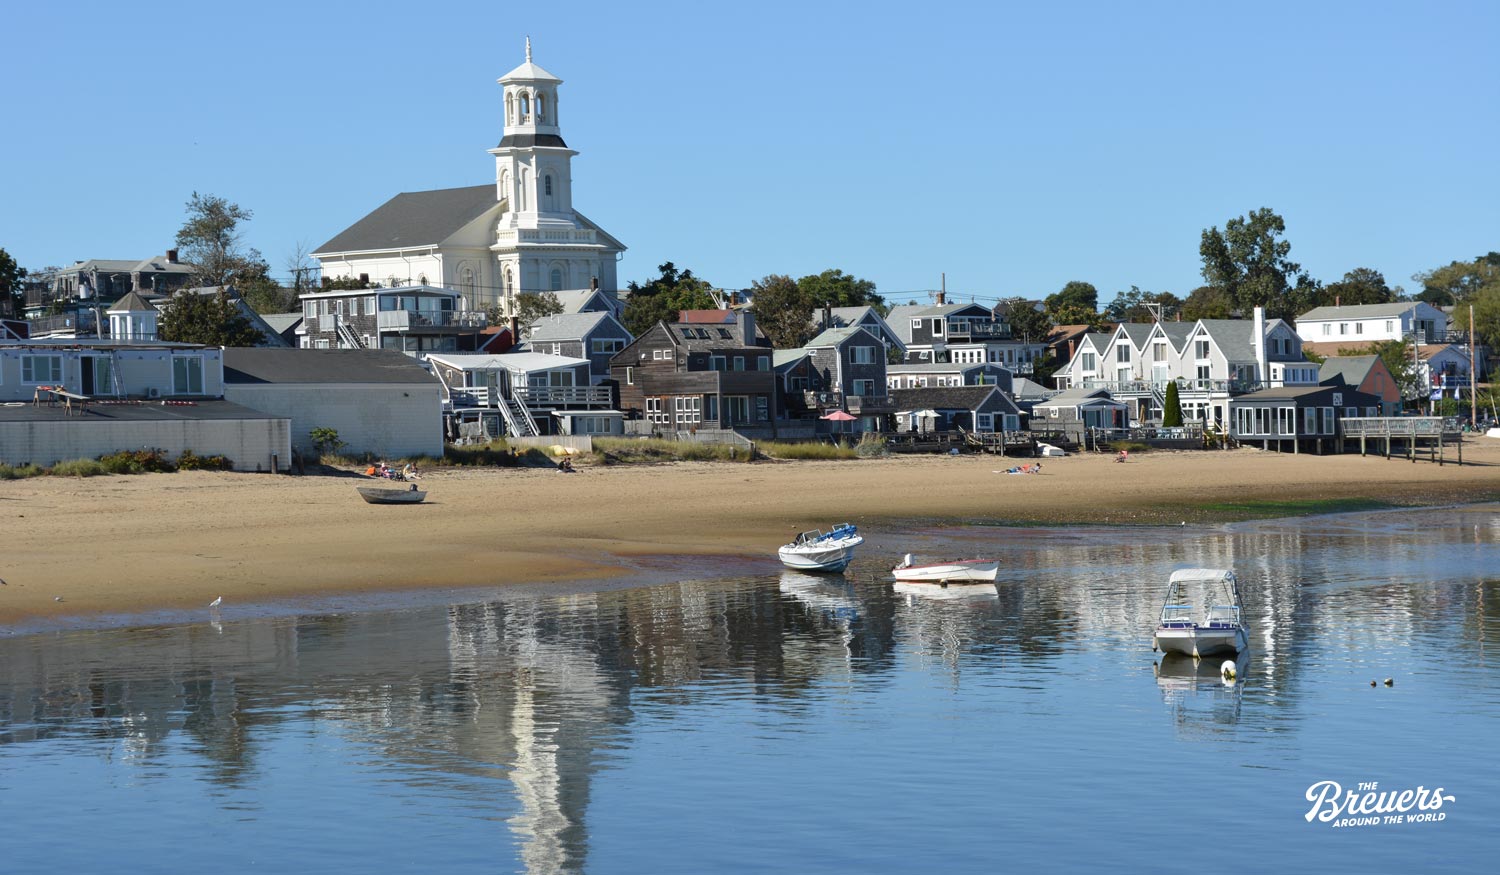 Hafen von Provincetown auf Cape Cod in New England